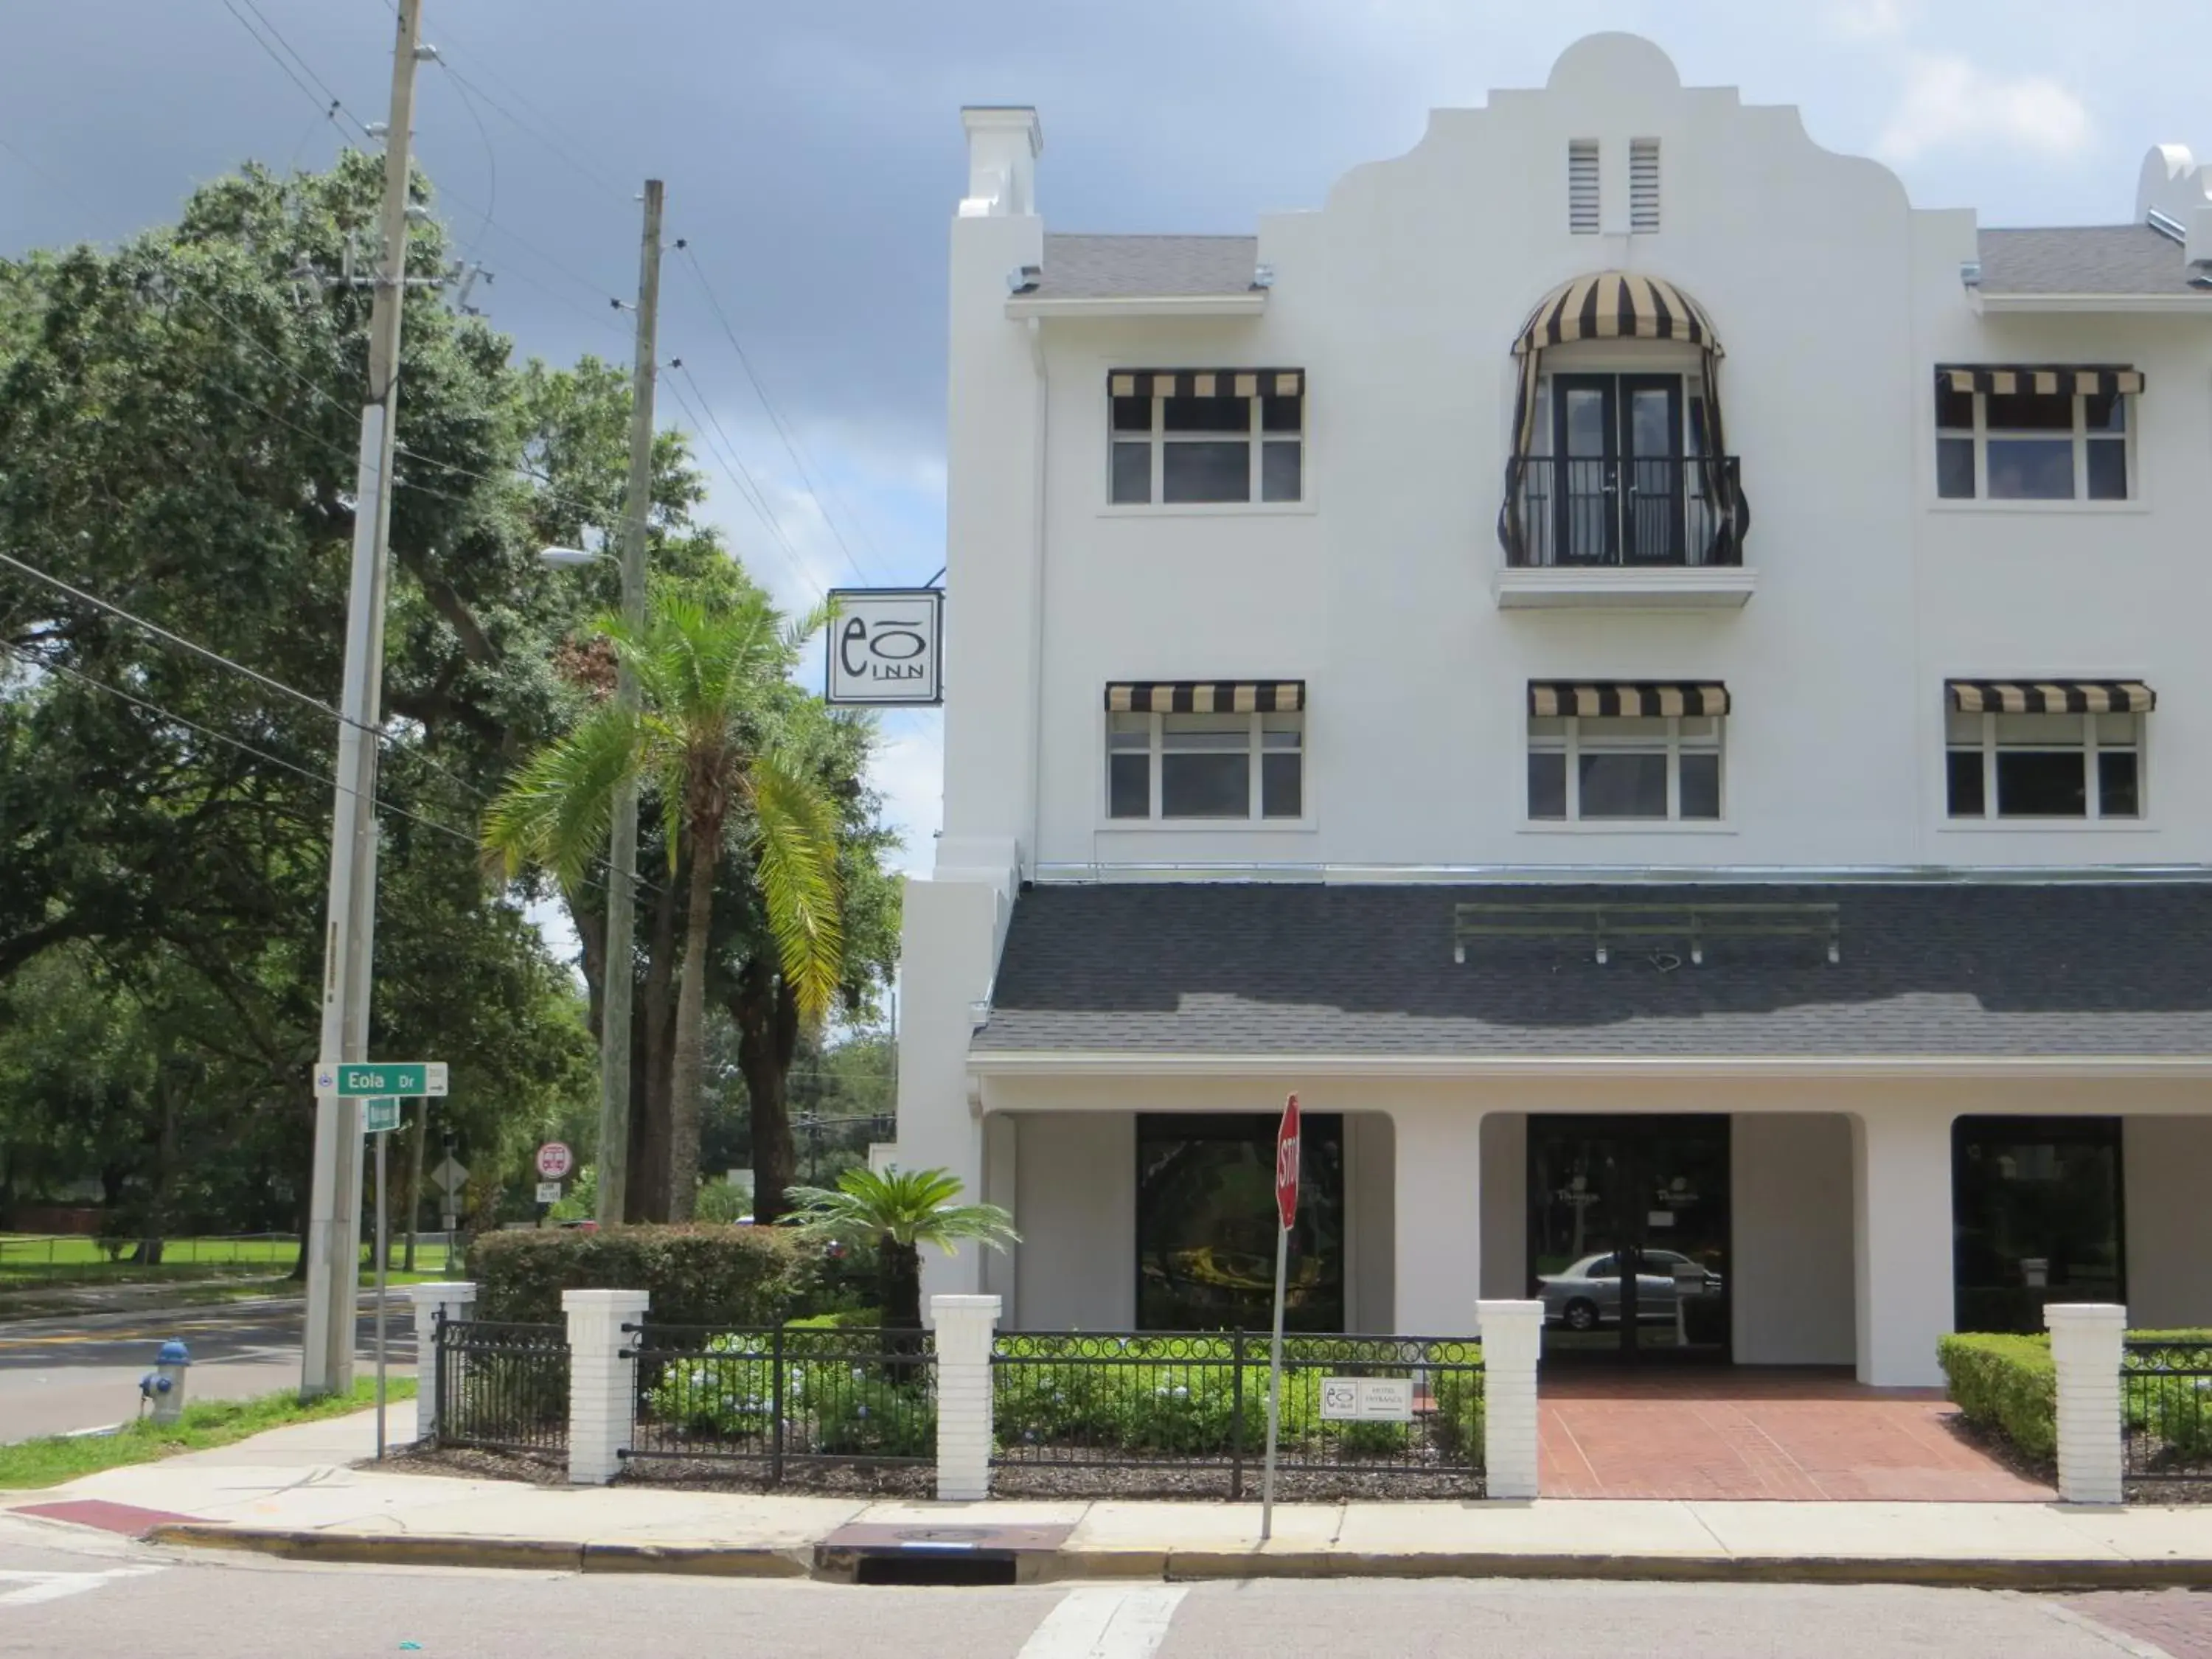 Facade/entrance, Property Building in Eo Inn - Downtown Orlando